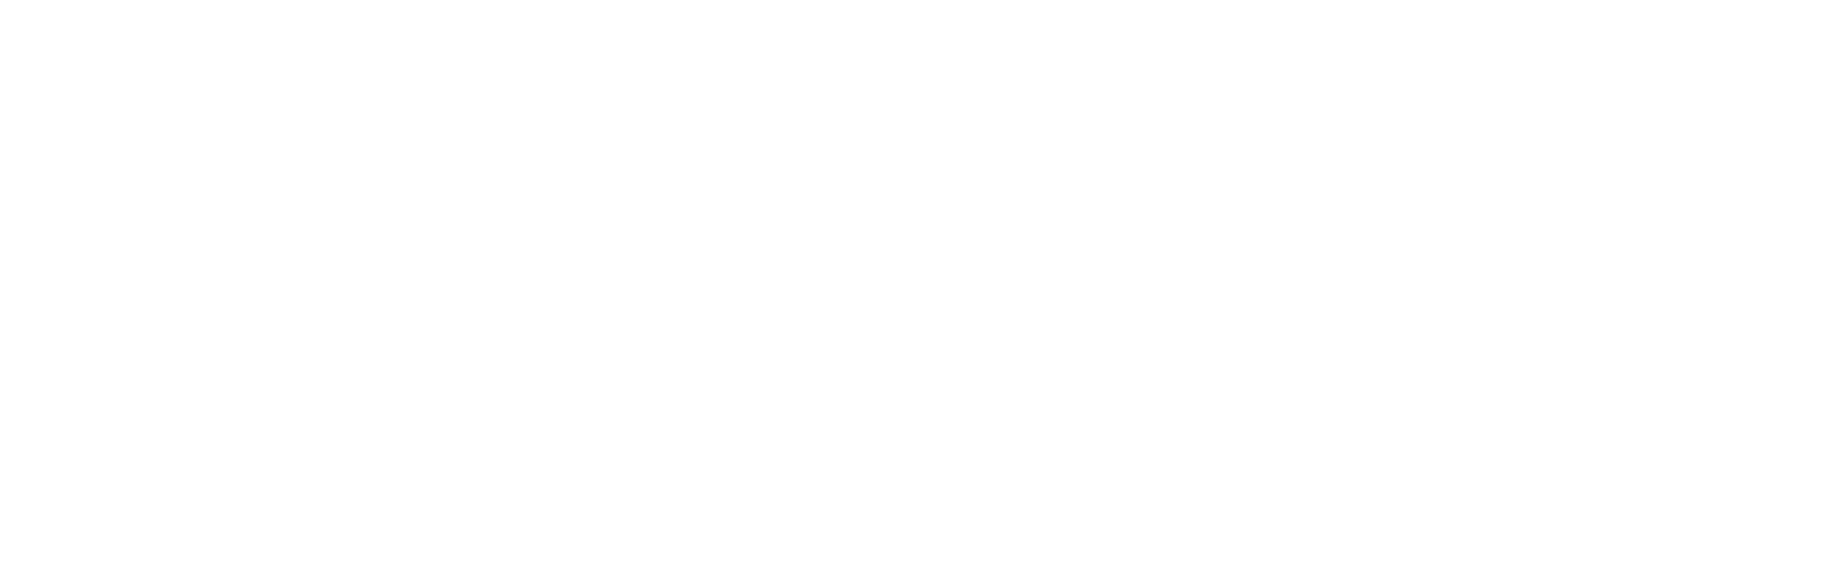 logo-Rotary